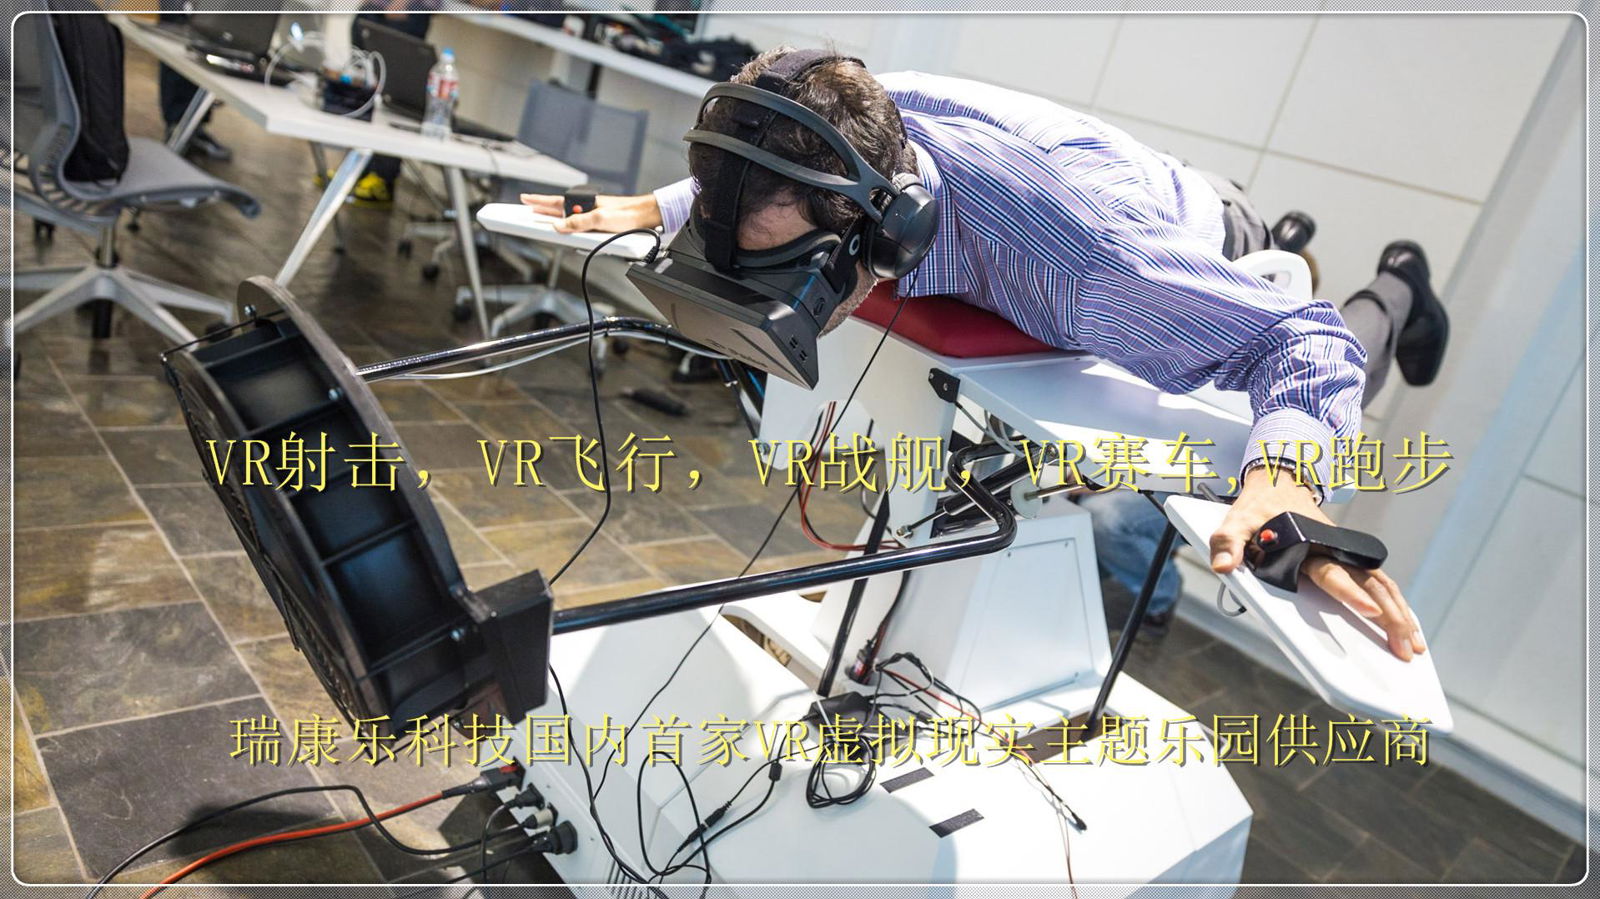 VR game equipment VR hardware equipment 